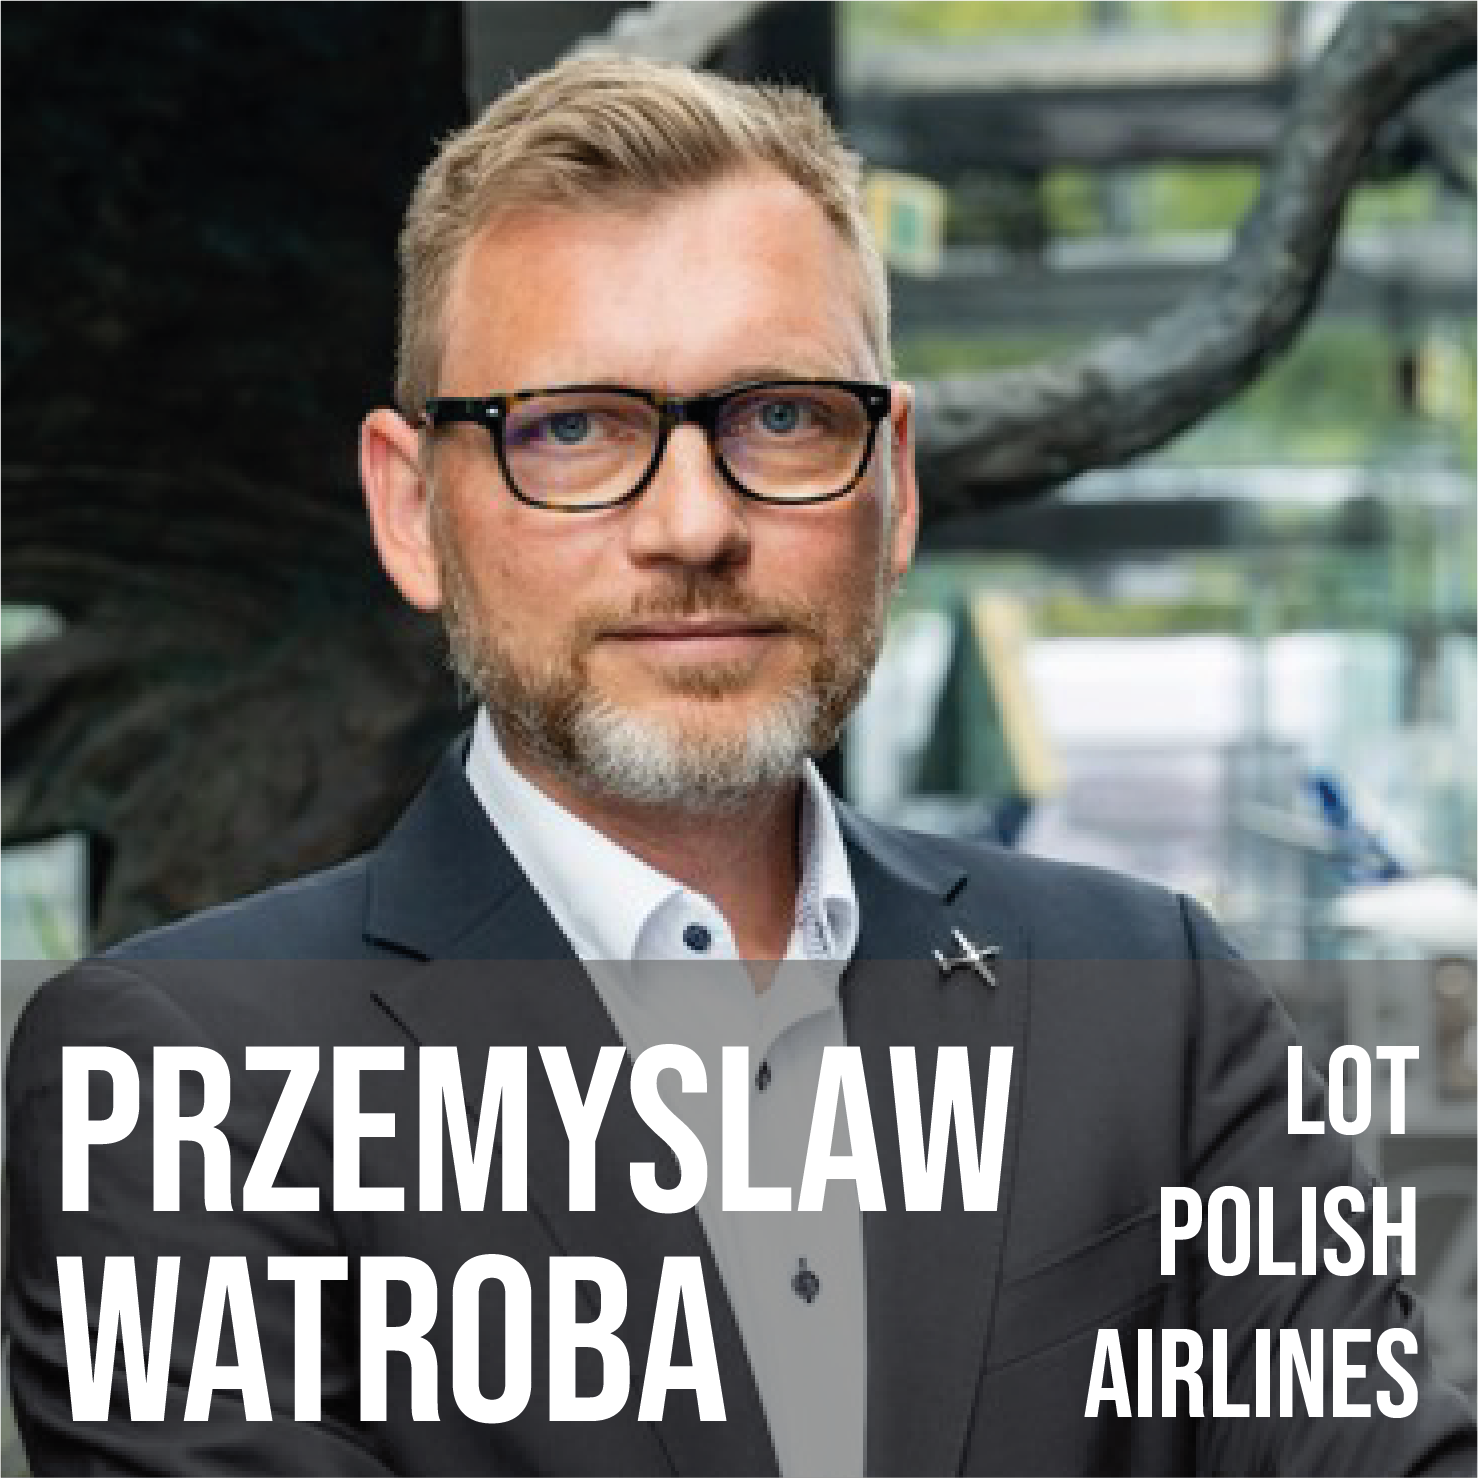 Przemyslaw Watroba